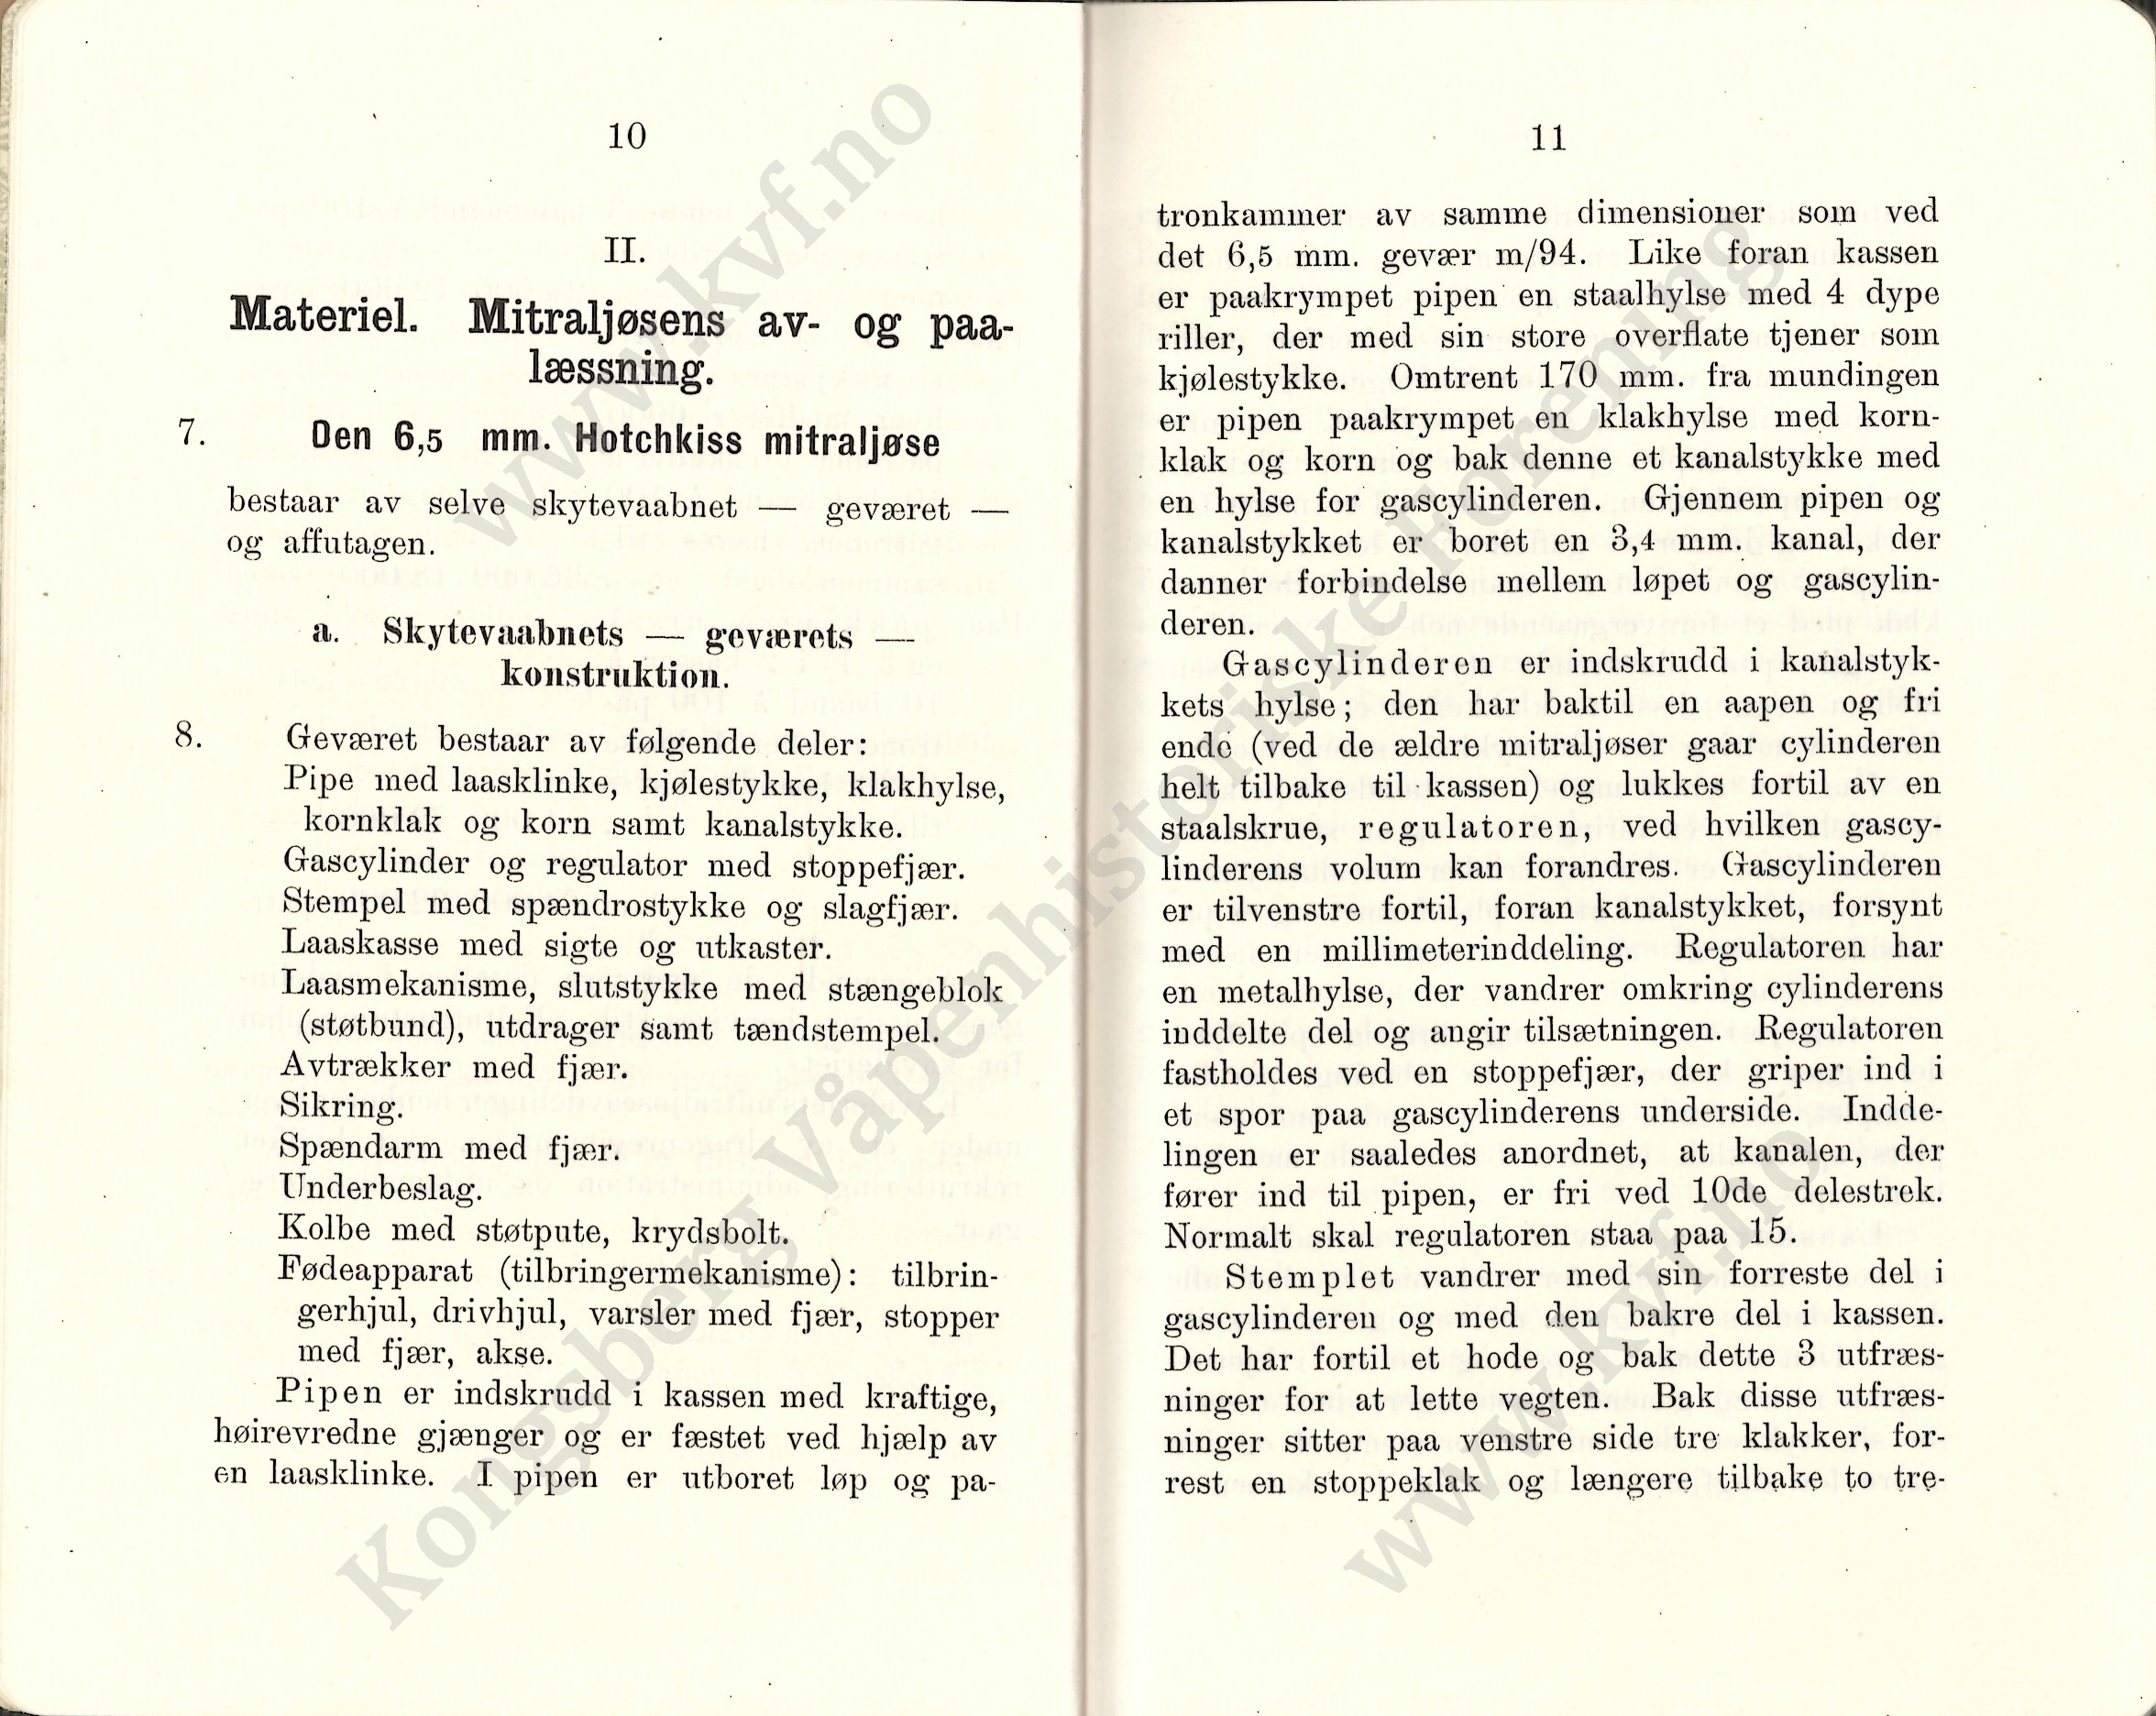 ./doc/reglement/Kav1910/Haandbok-Kav-Mitr-1910-7.jpg